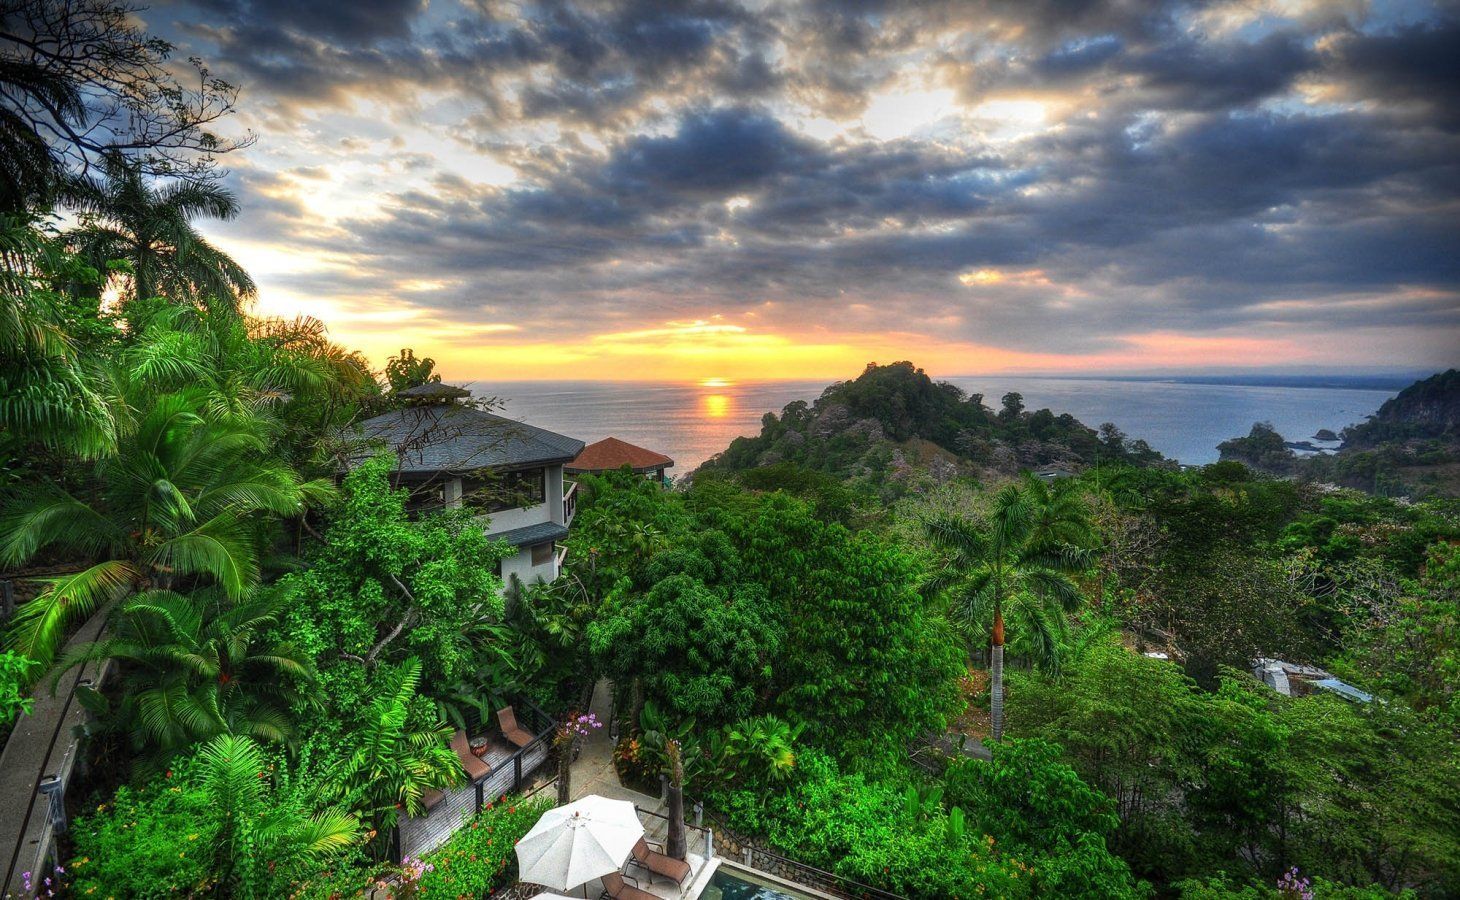  Comment trouver la meilleure villa au Costa Rica ?  :: Fshoq !  Blog de voyage
